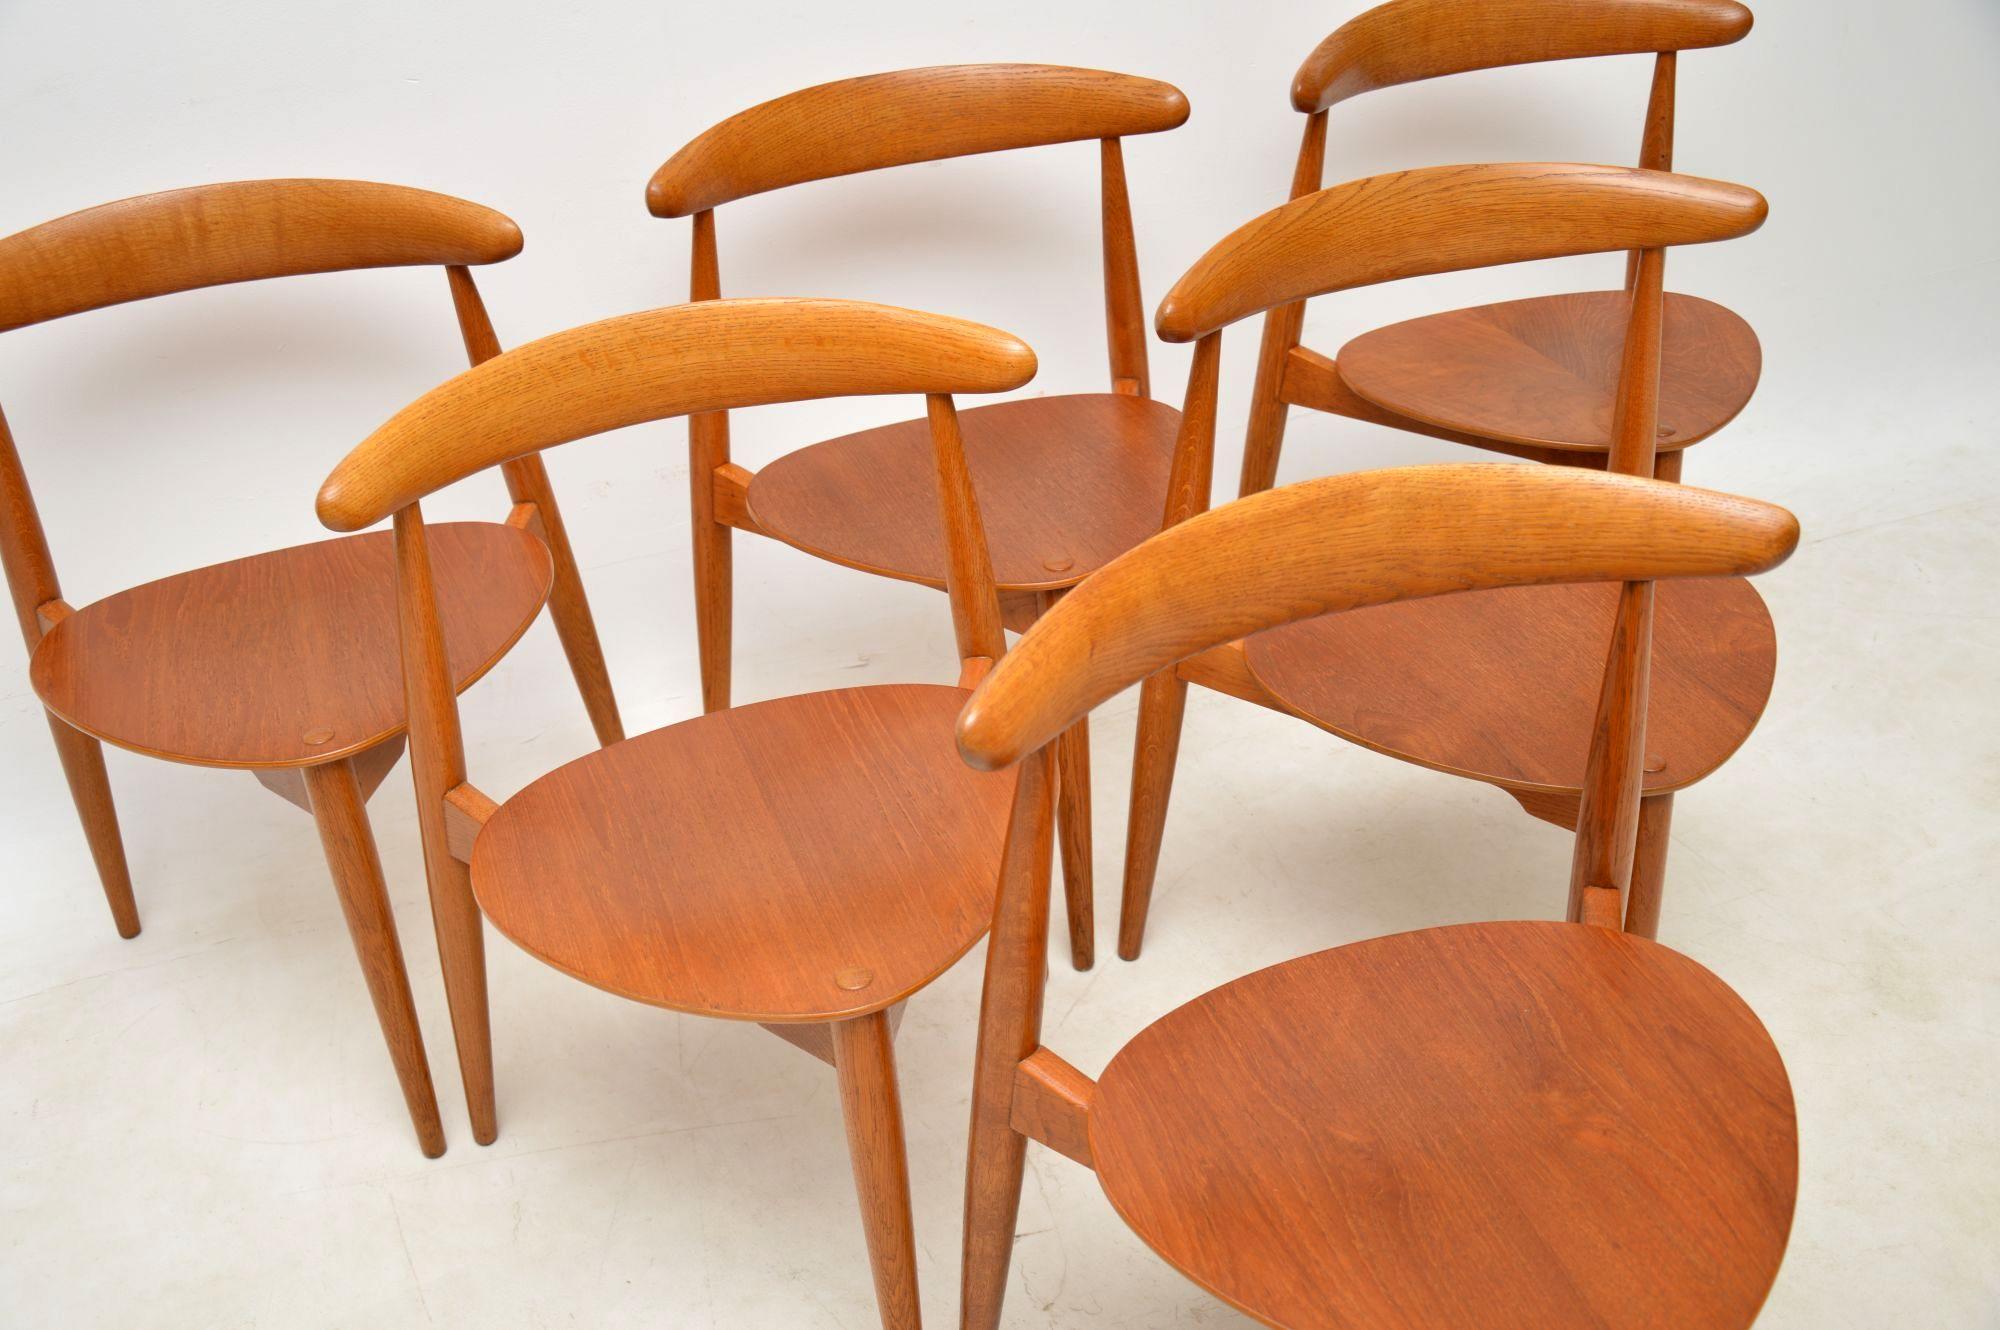 1950s Danish Teak & Oak Dining Table & Chairs by Hans Wegner for Fritz Hansen 1